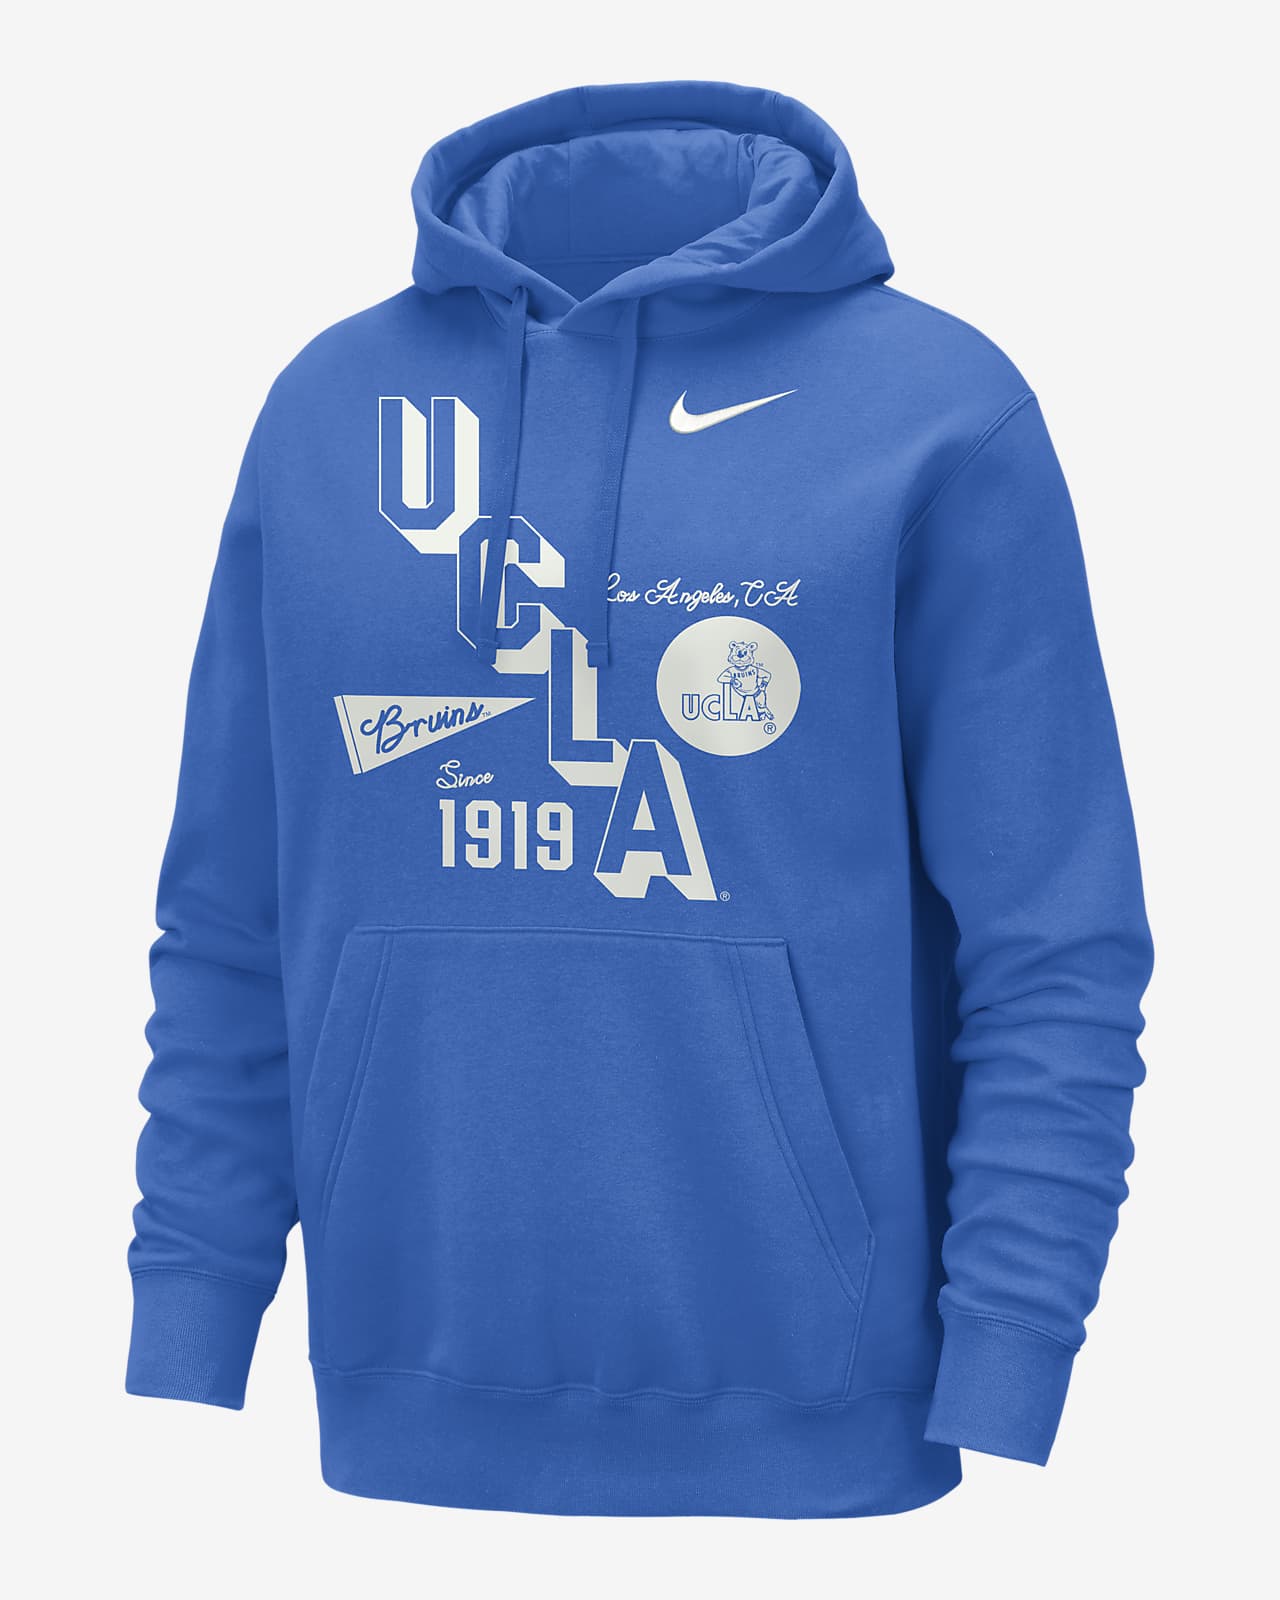 UCLA Club Men's Nike College Hoodie